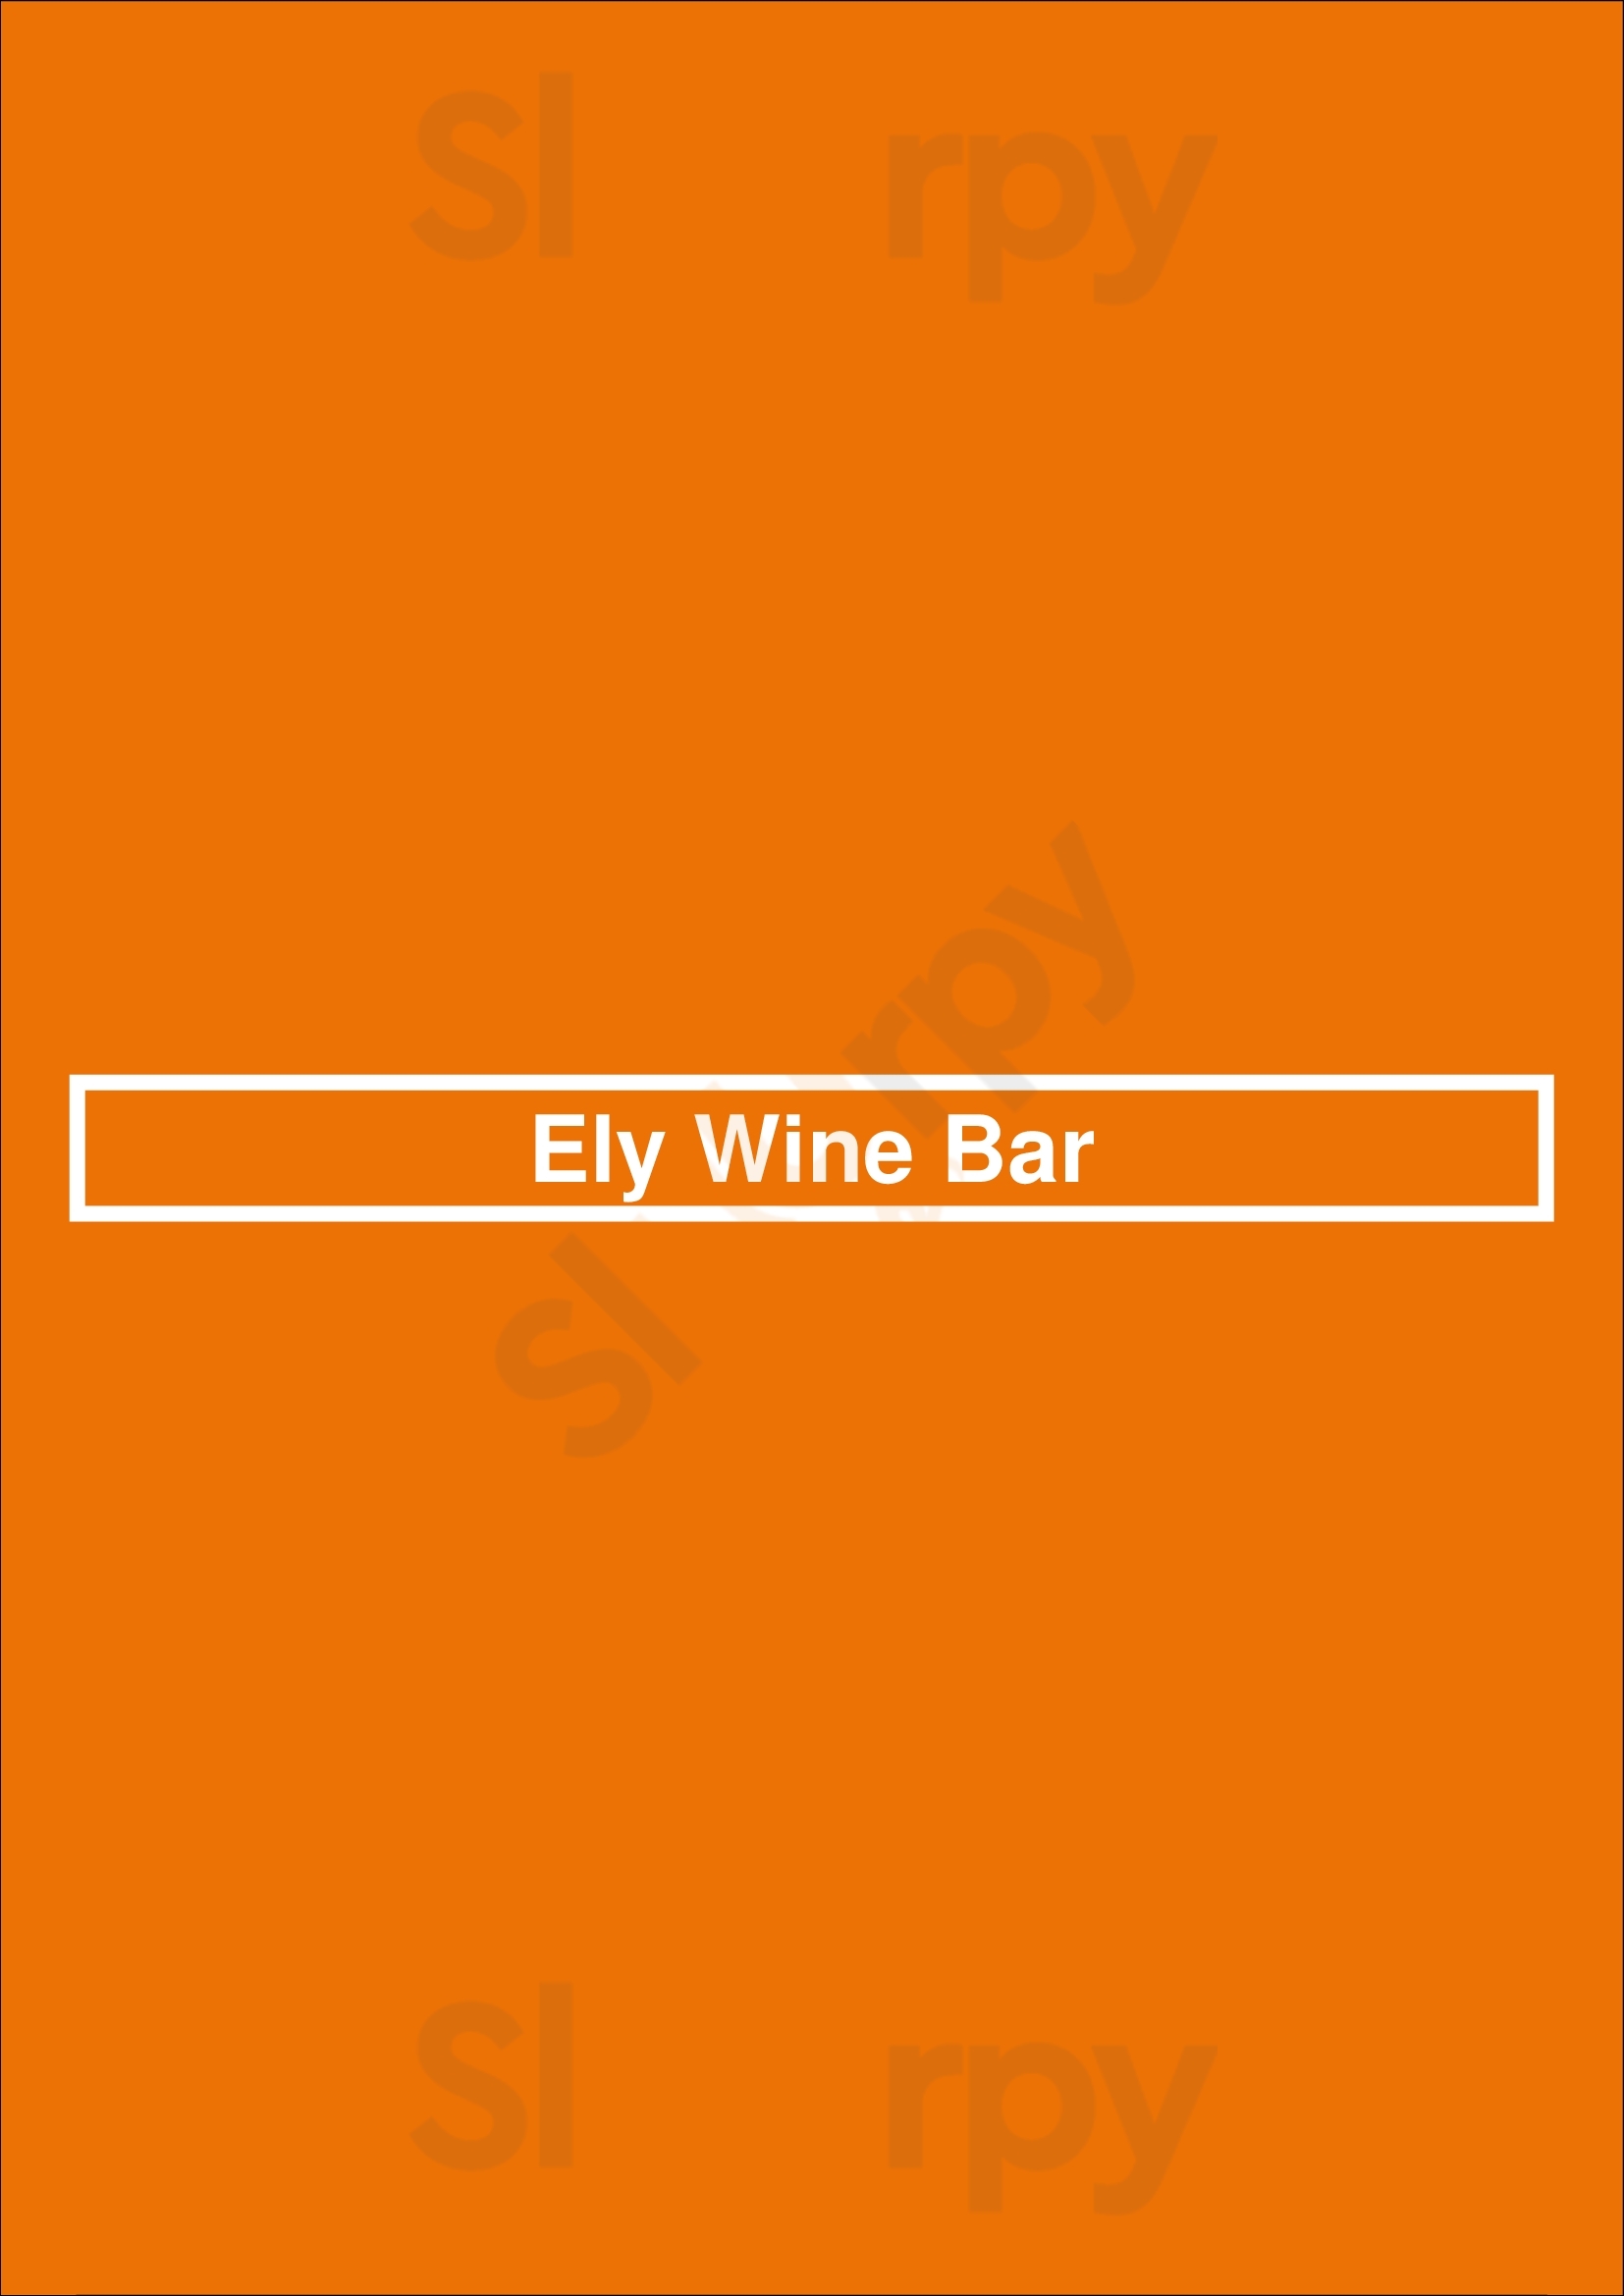 Ely Wine Bar Dublin Menu - 1